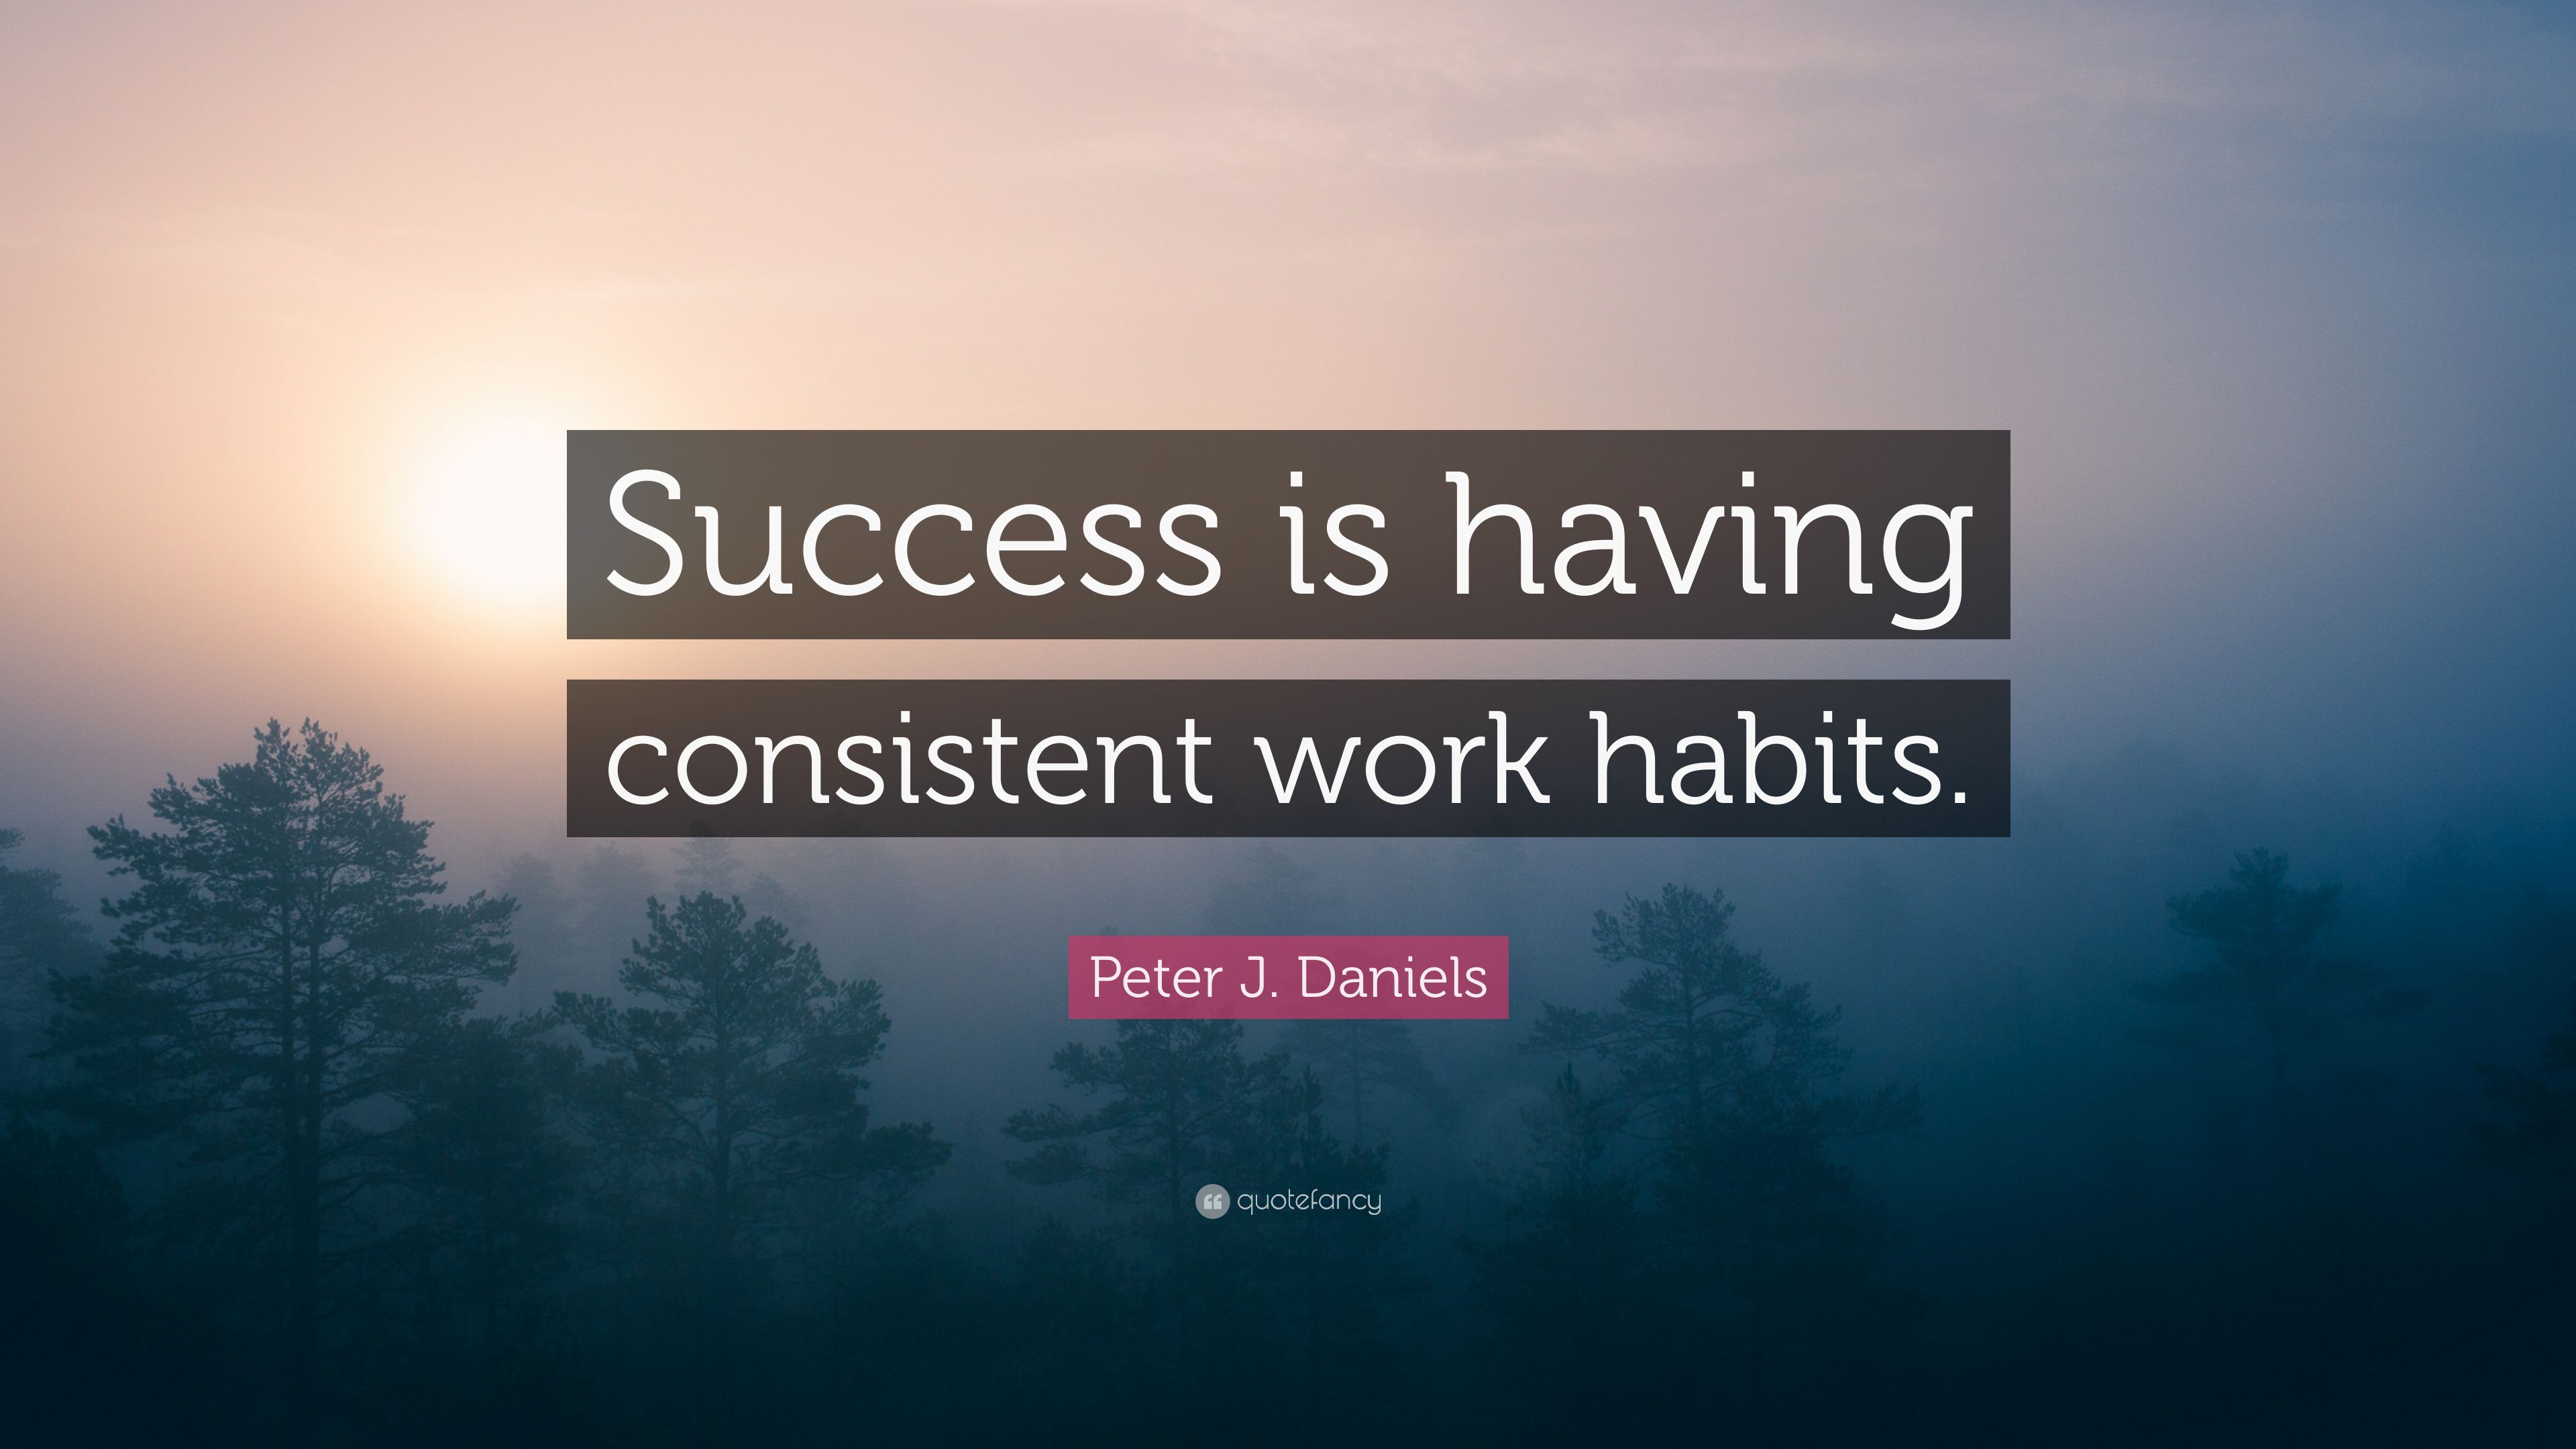 Peter J. Daniels Quote: “Success is .quotefancy.com